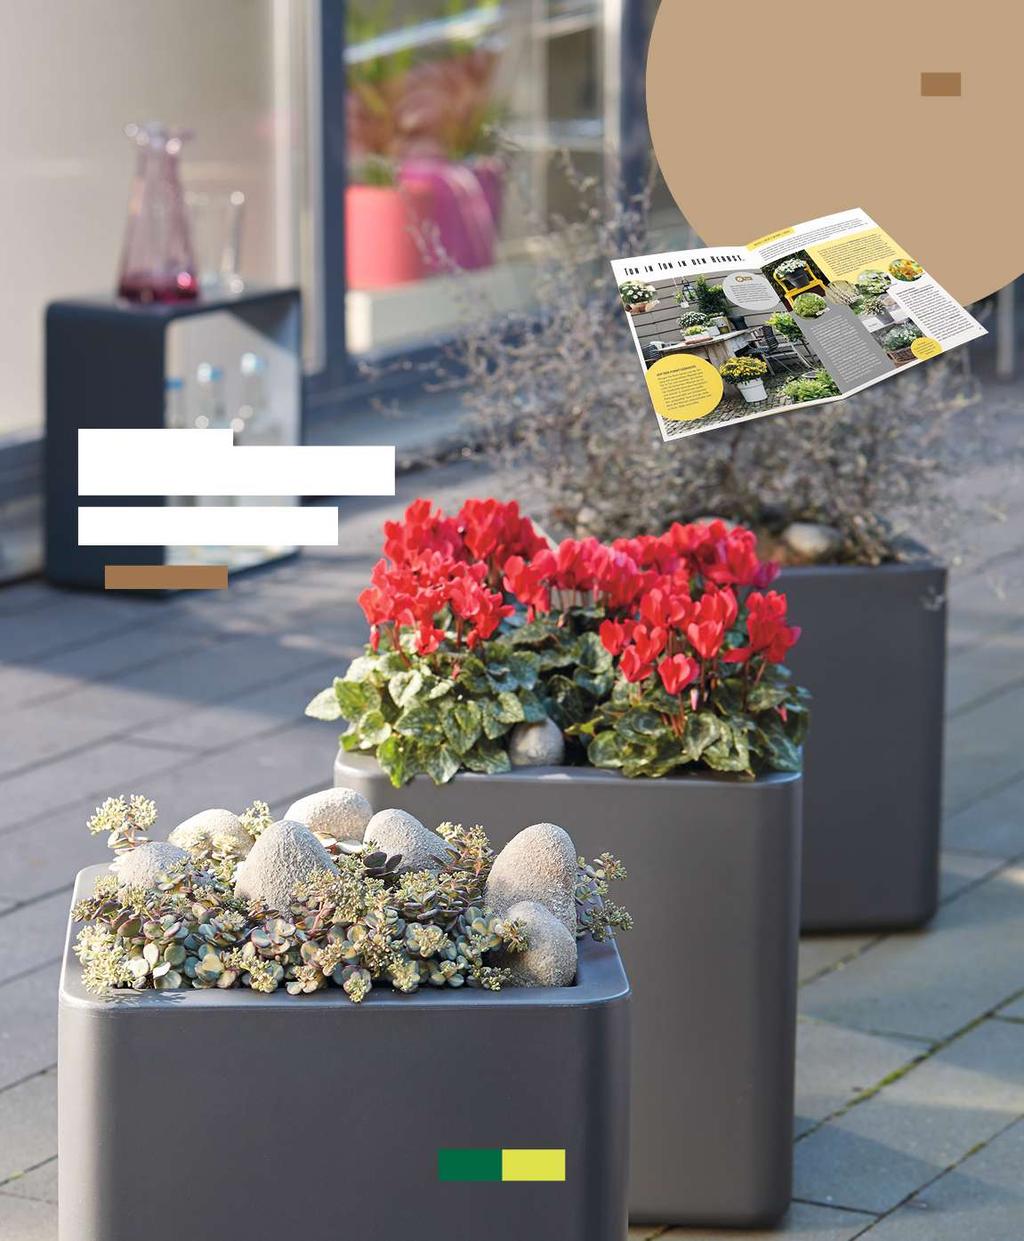 Abb. zeigt mehrere Exemplare Info Noch mehr Ideen für Ihren Ton-in-Ton - Herbstgarten gibt es jetzt in unserem Kundenmagazin "grüne LIEBE".